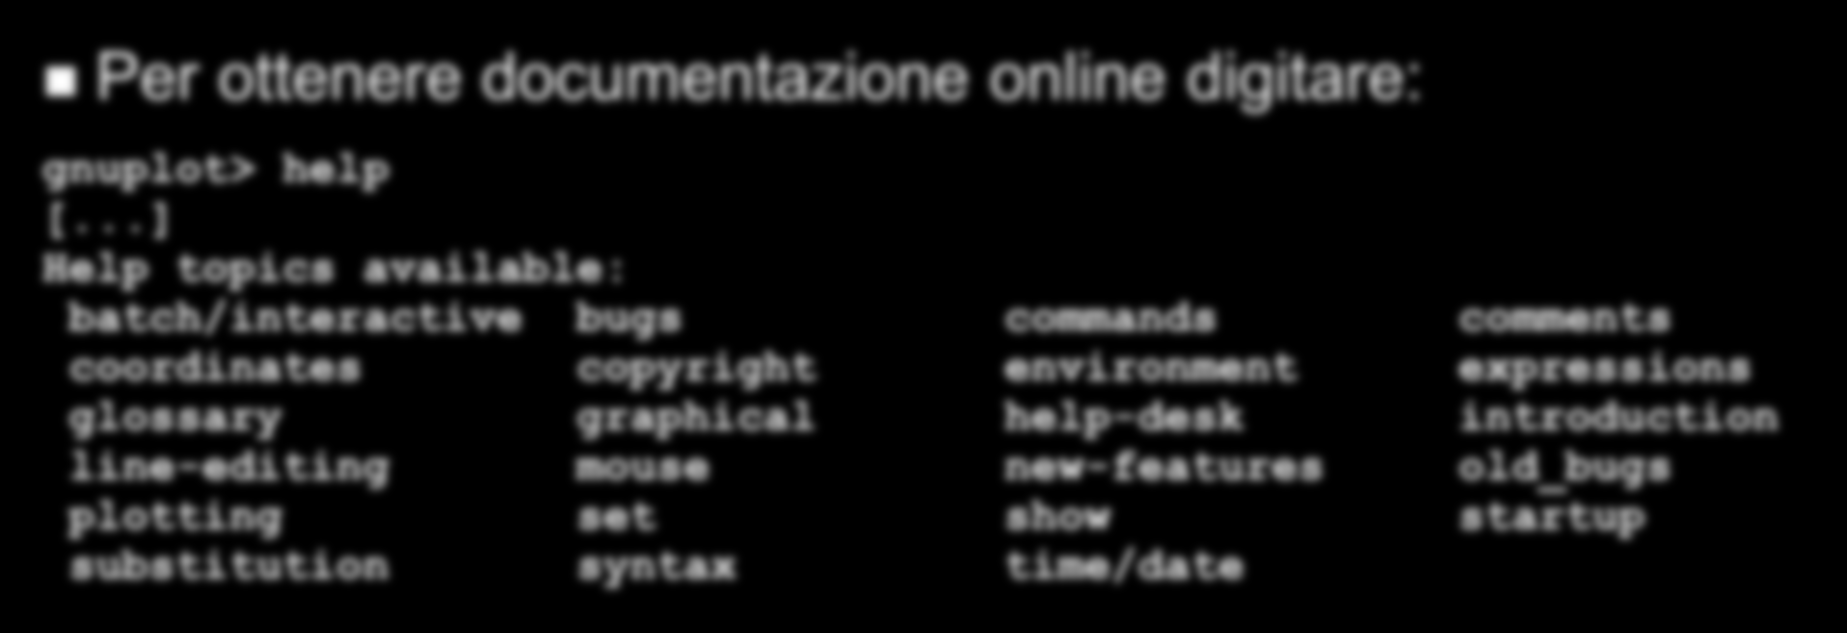 Gnuplot commands I comandi di gnuplot permettono di: uscire, leggere un file di comandi, salvare parametri; realizzare grafici; modificare i parametri; eseguire comandi di shell; definire una